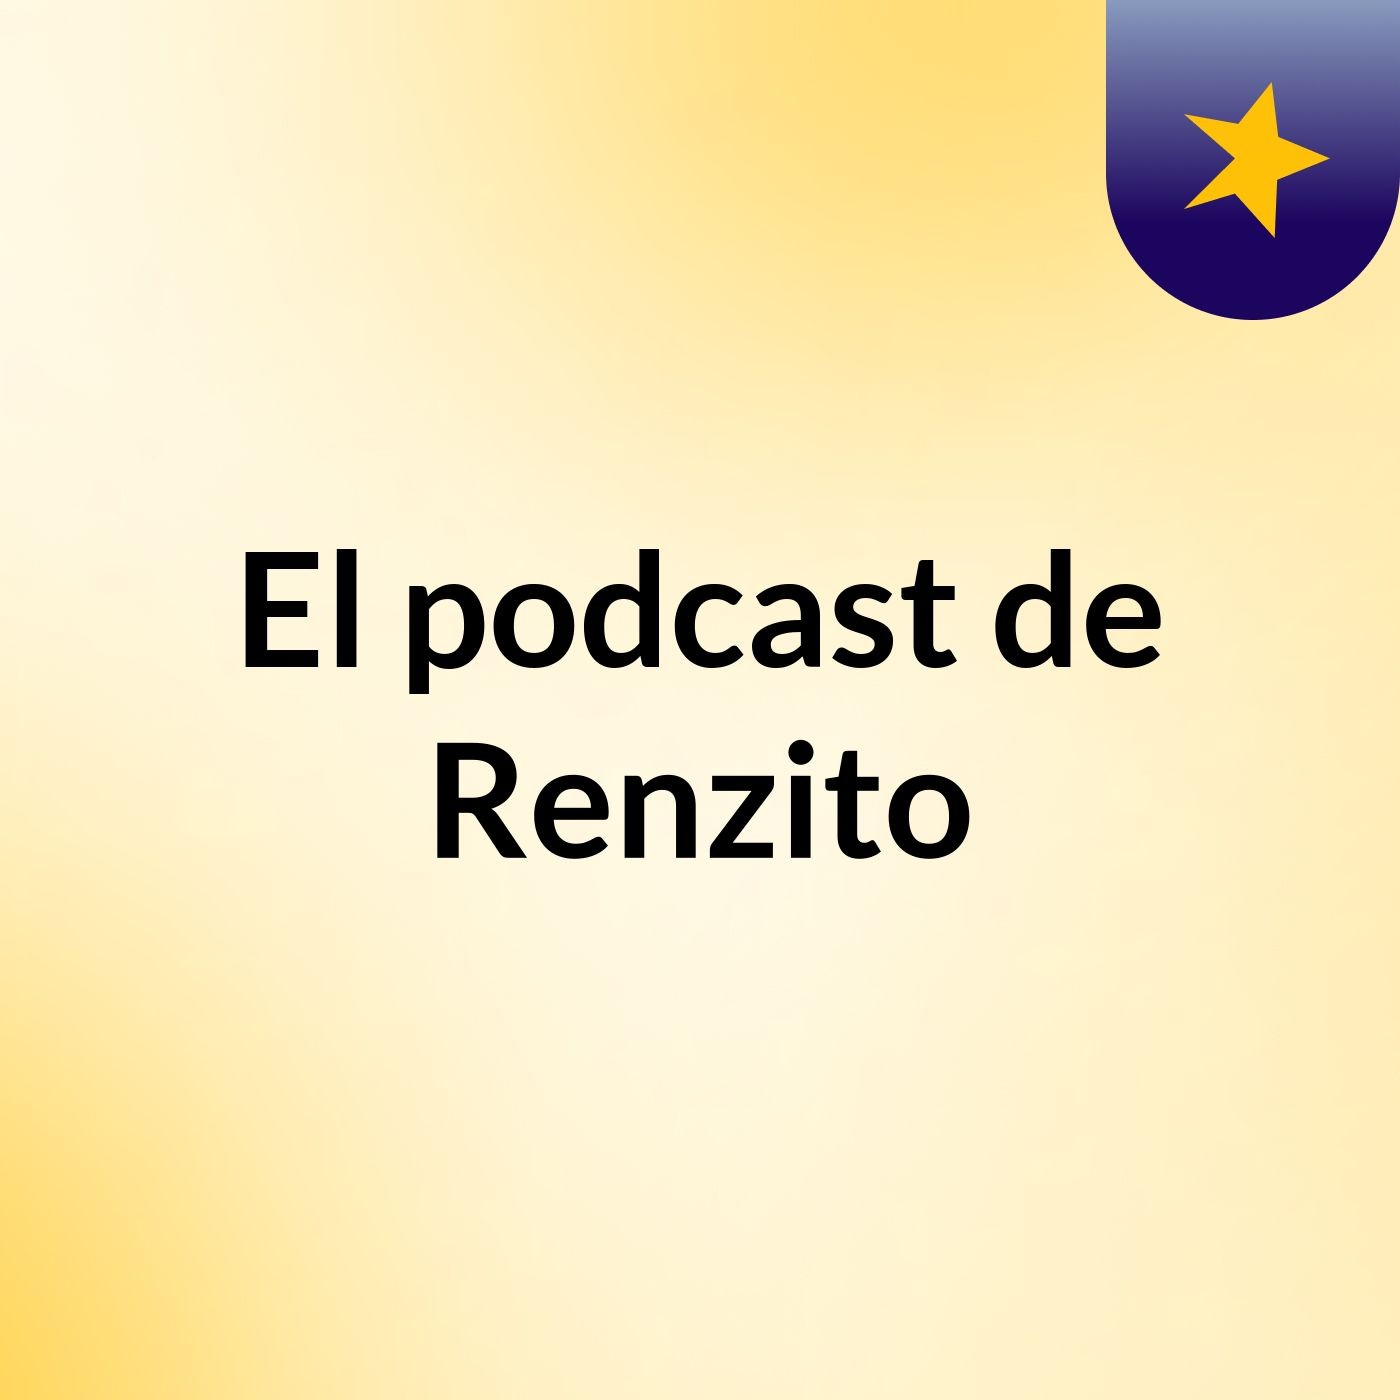 El podcast de Renzito